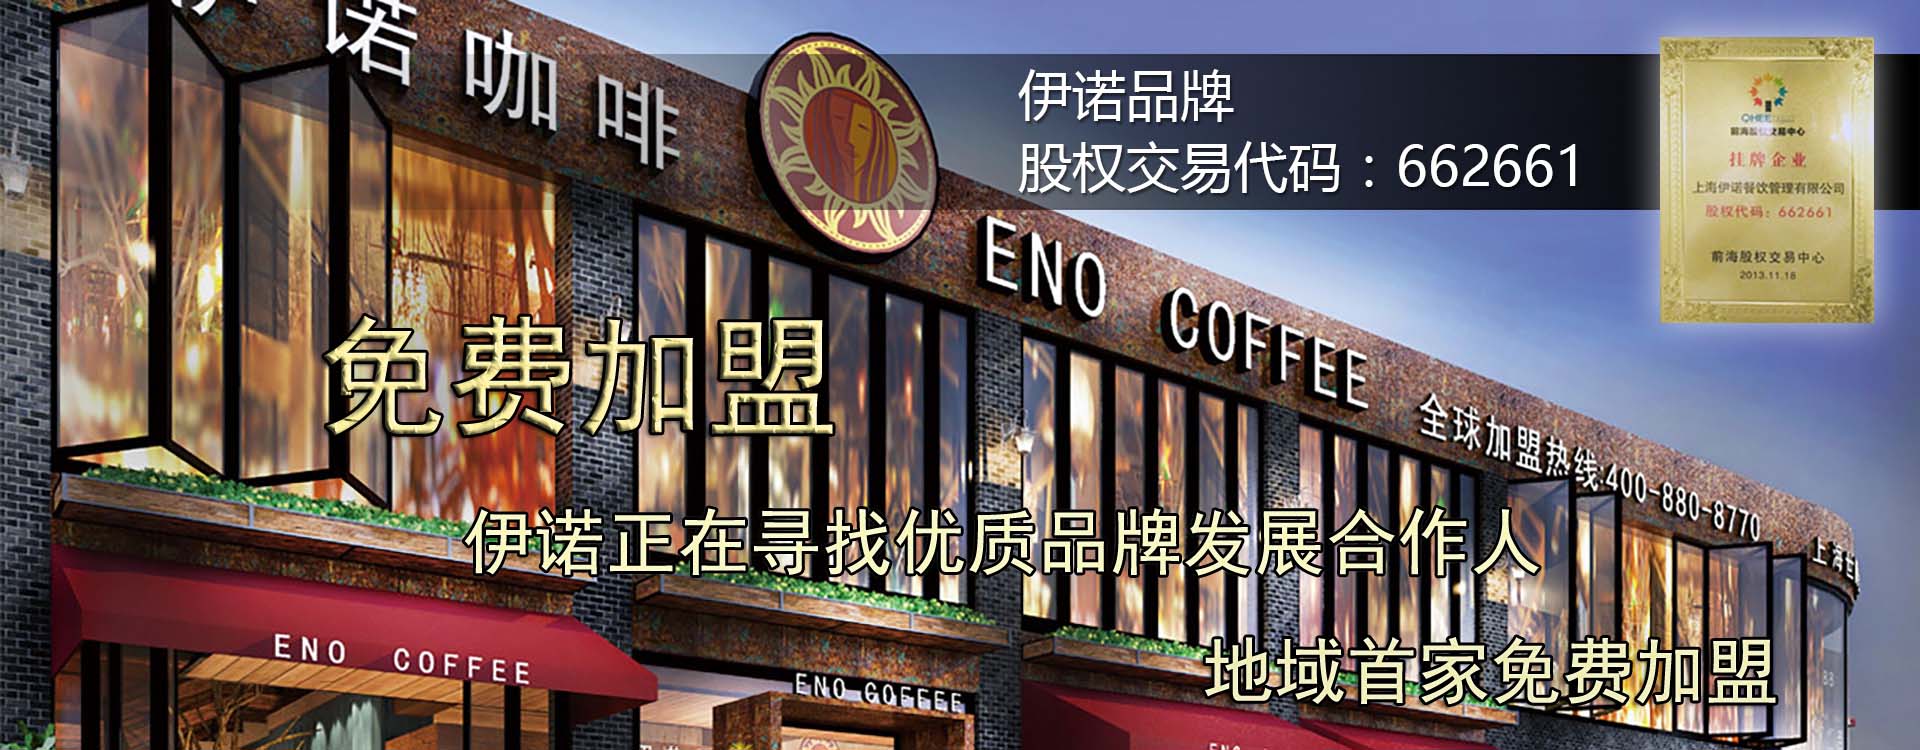 上海咖啡加盟多少钱，伊诺咖啡多少钱？